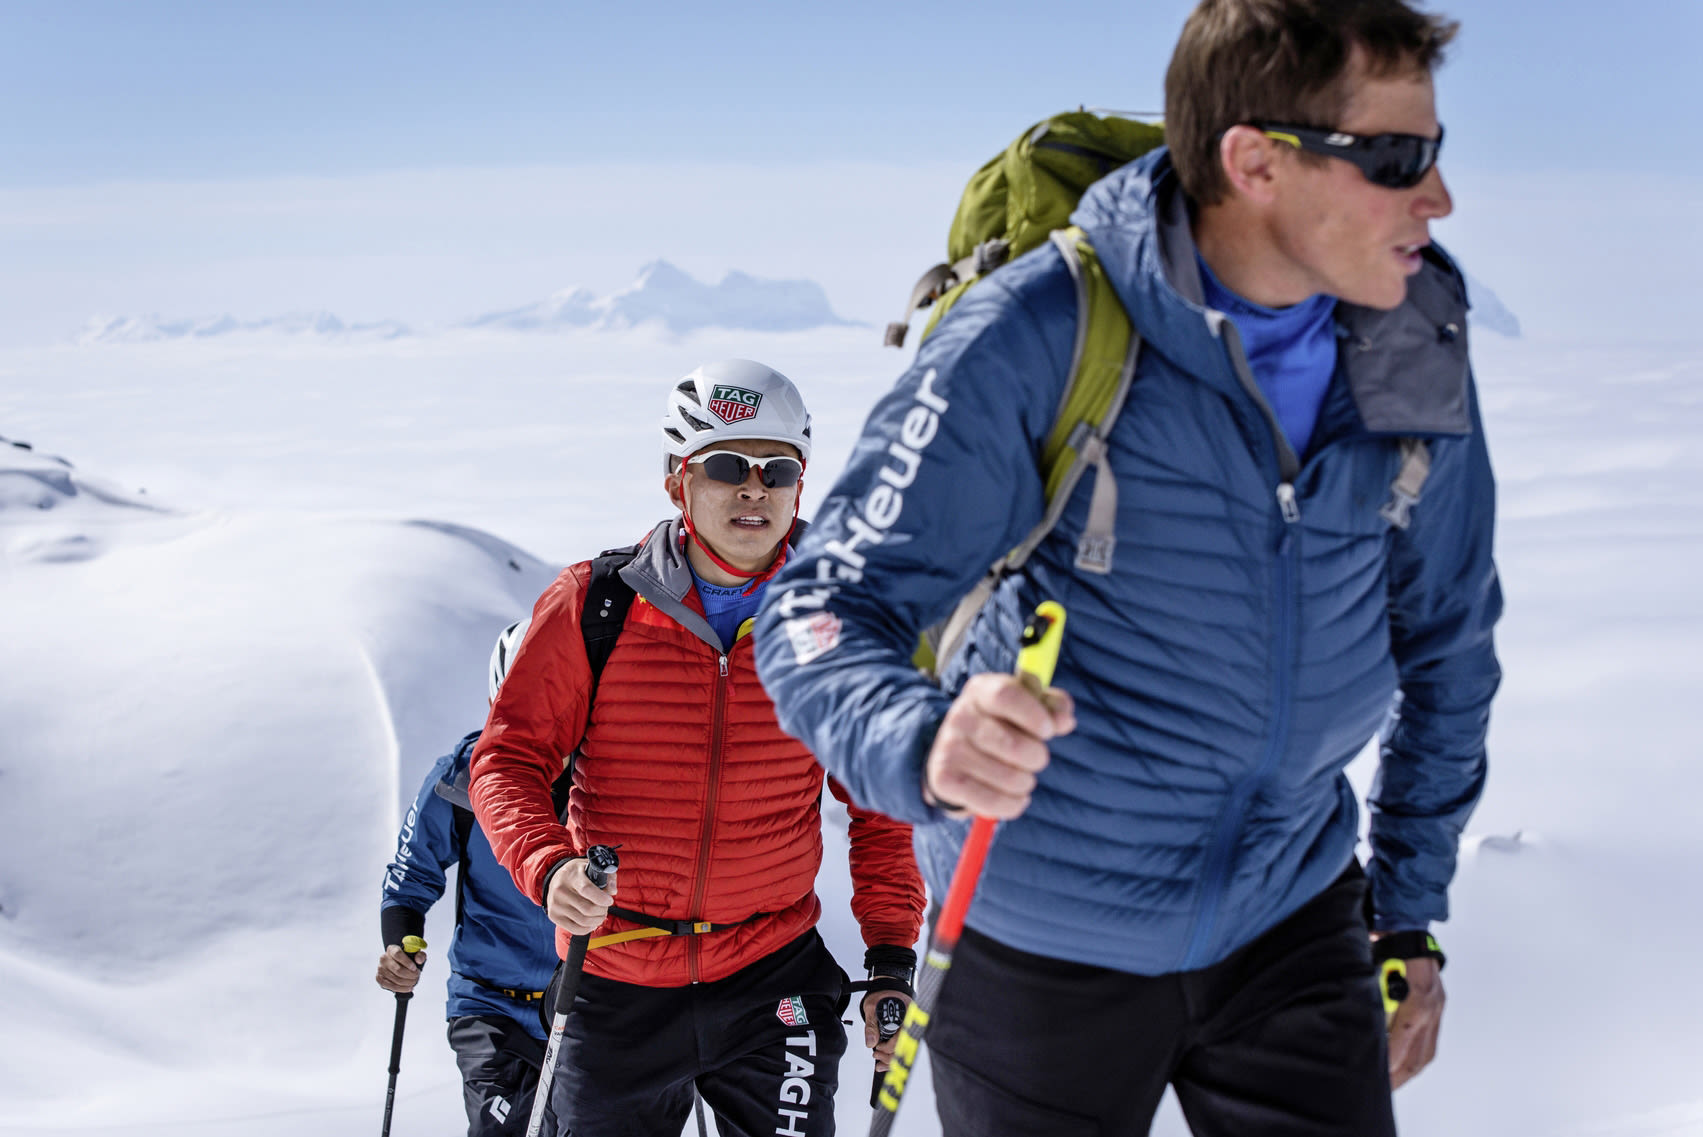 PDG, Zermatt, Verbier, Ski tour, peau de phoques, course,